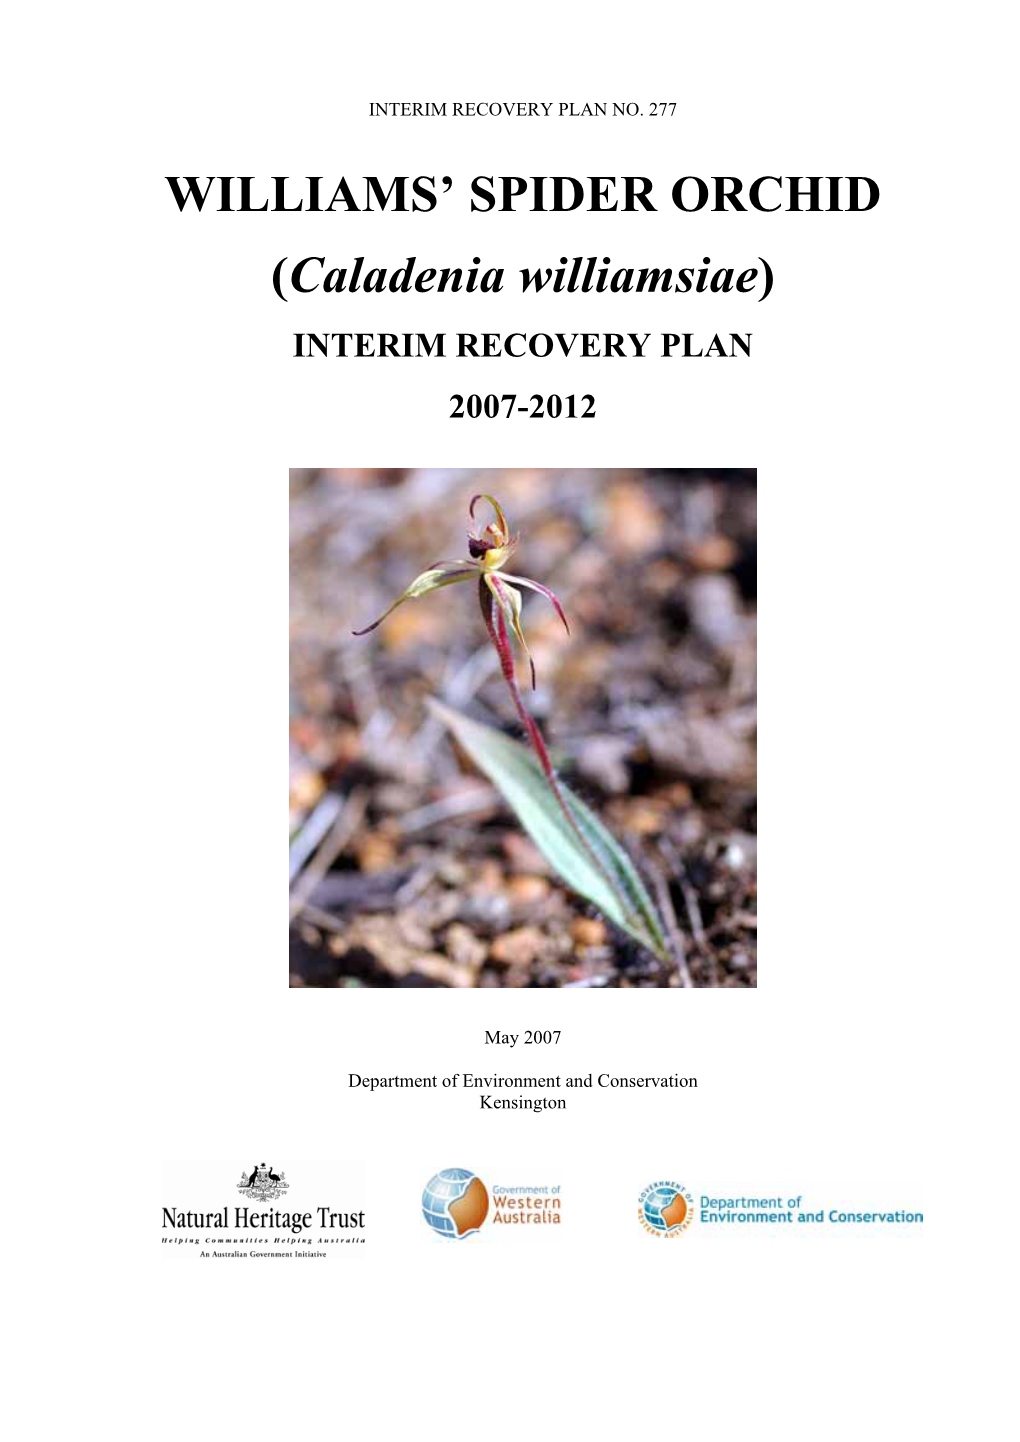 Caladenia Williamsiae)